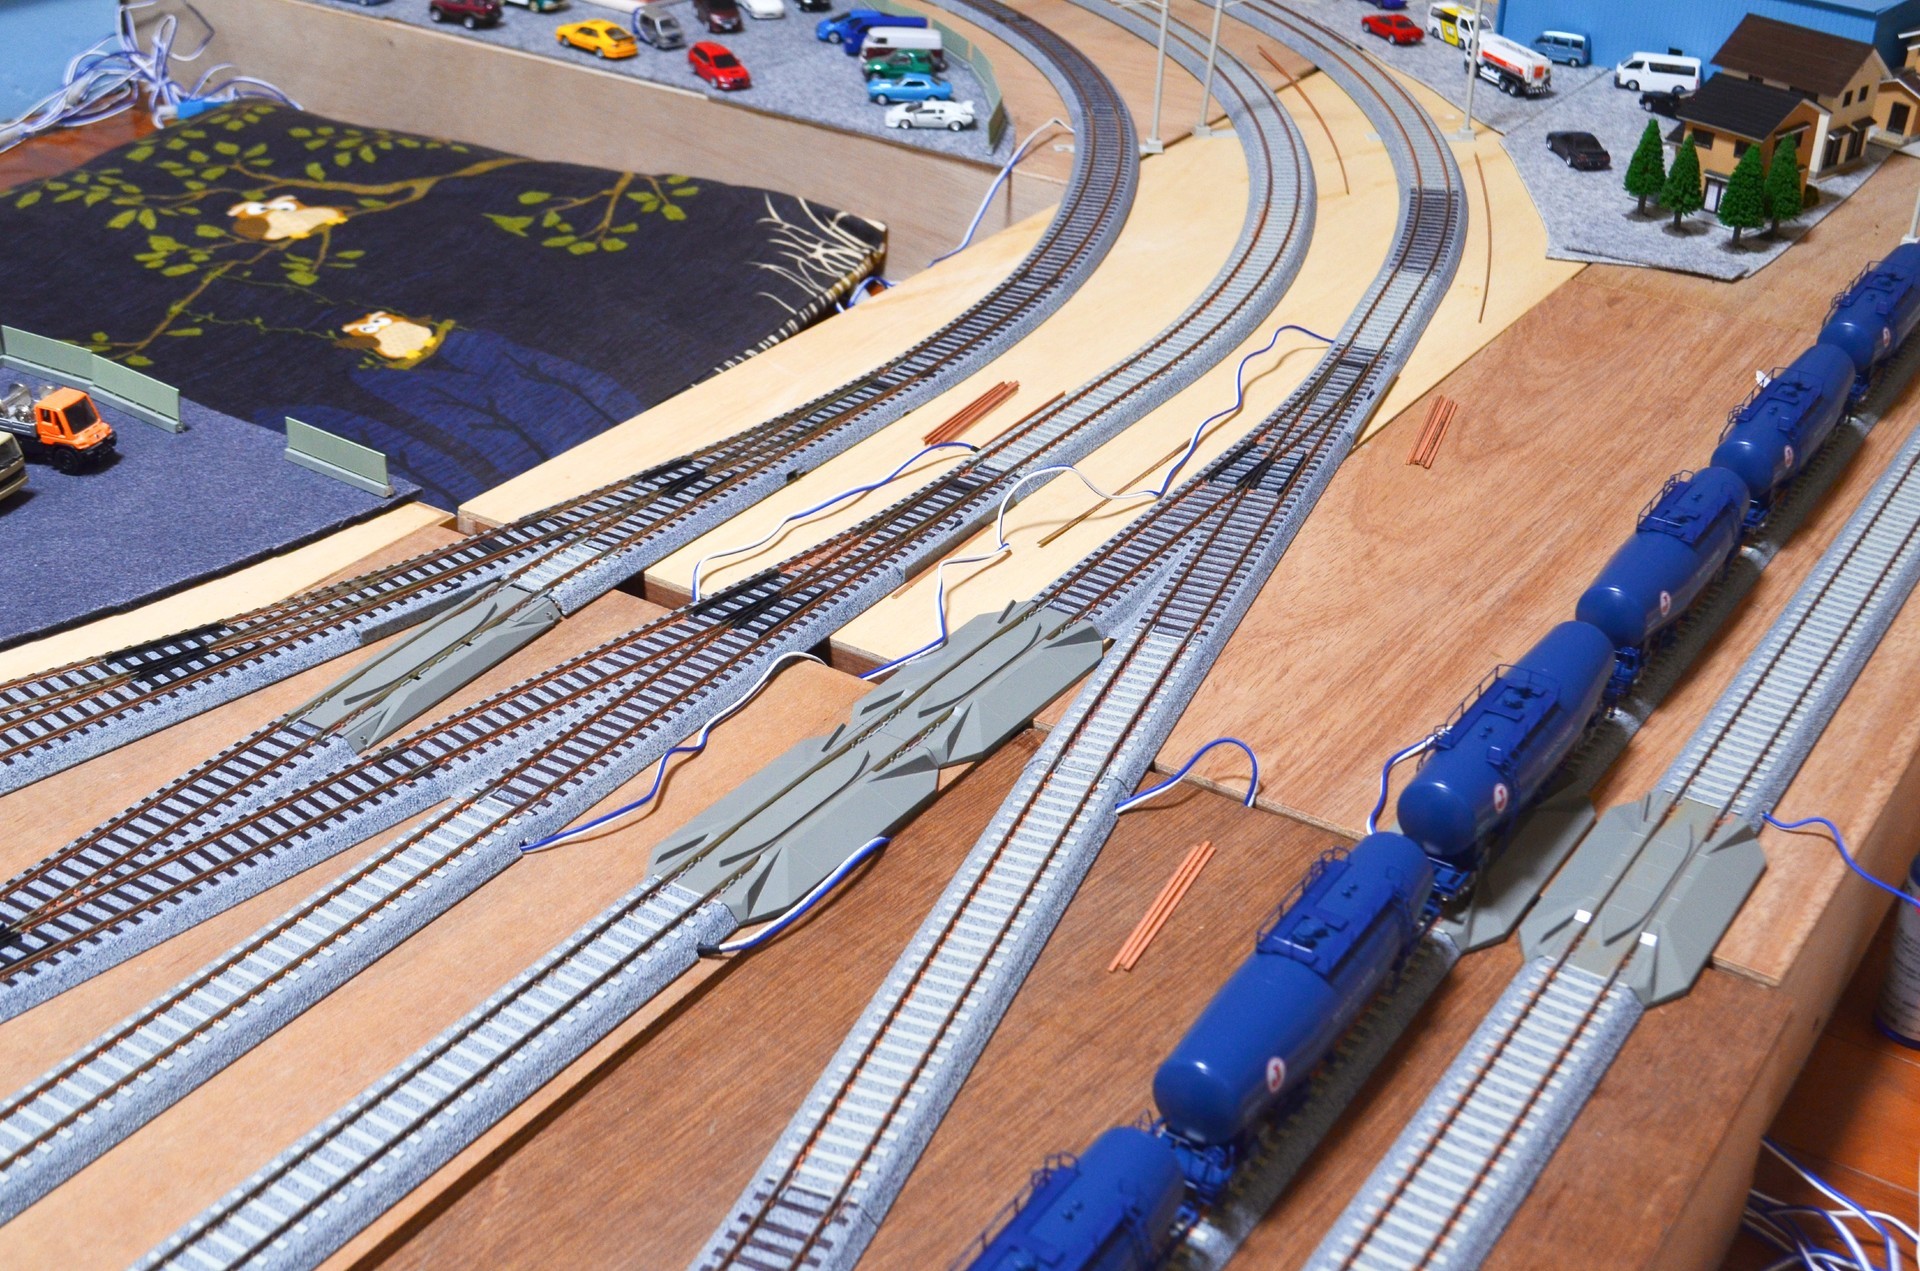 2021年線路配置 HOユニトラック 16番ゲージ鉄道模型: ゆるりと遊ぶ16番ゲージ鉄道模型